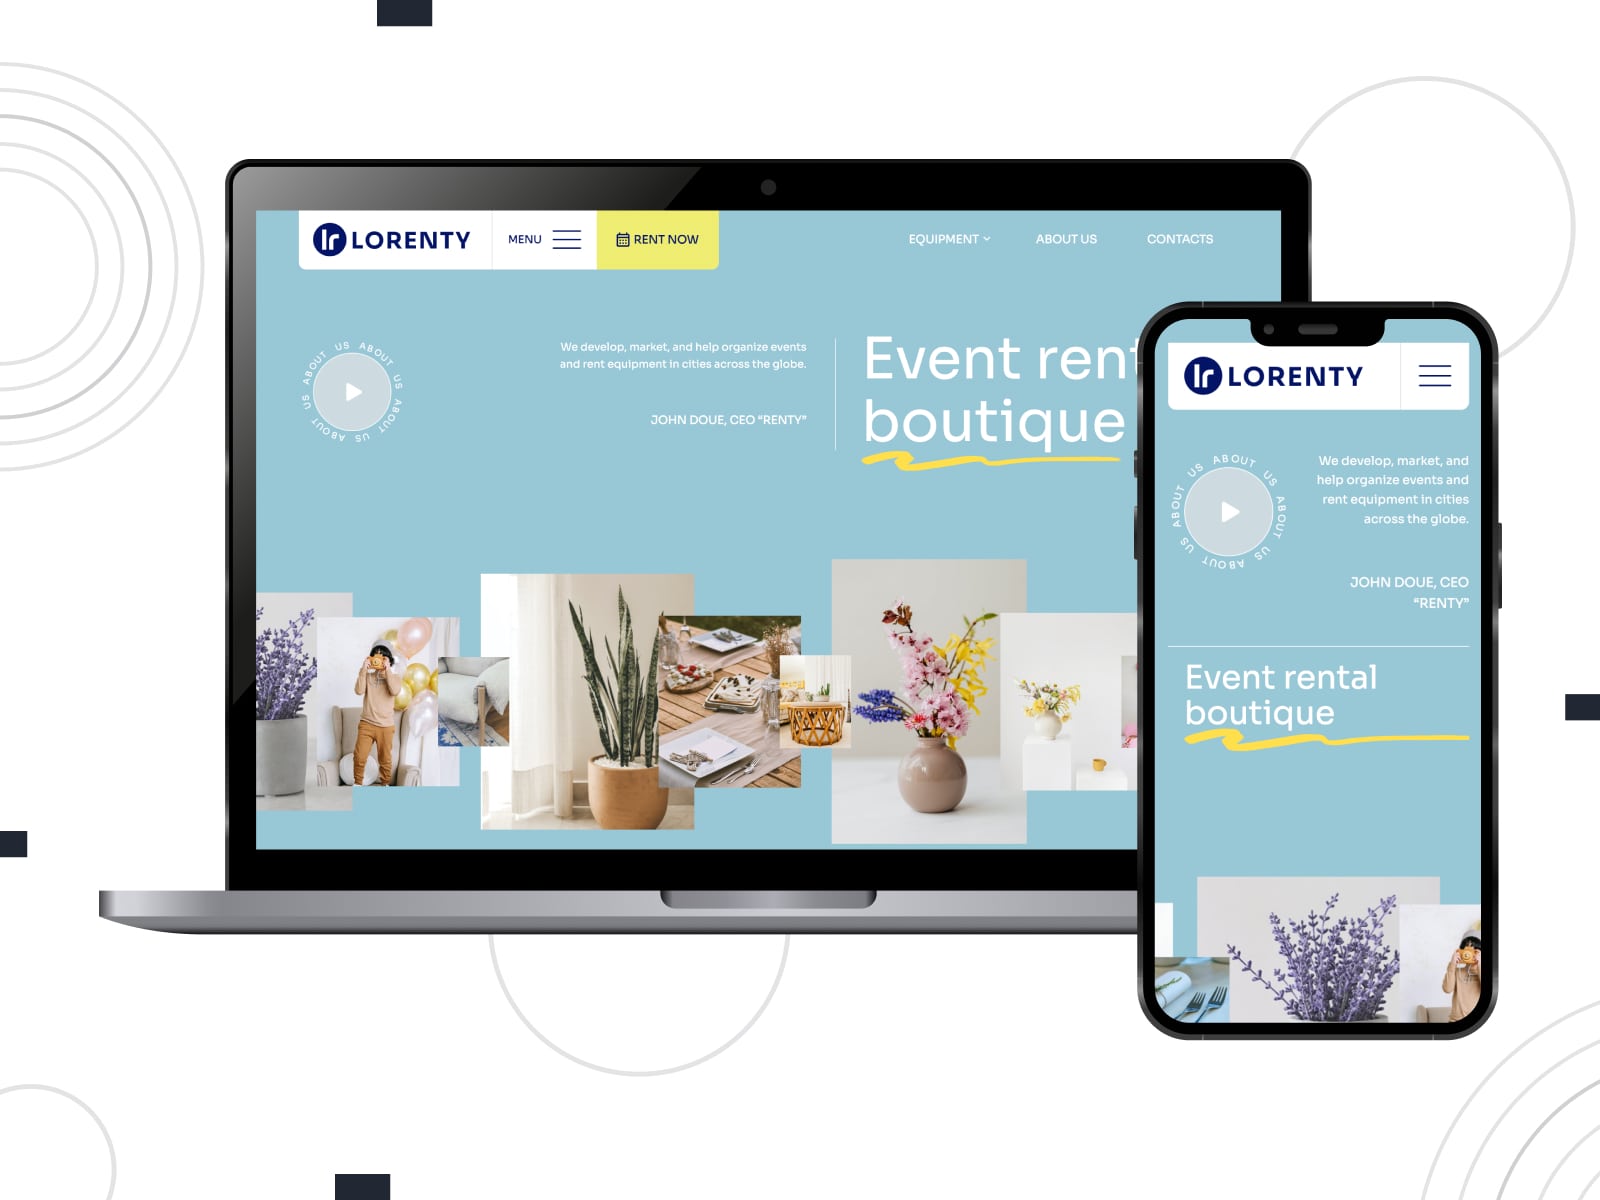 Colaj al șablonului de site-uri web de închiriere pentru petreceri Lorenty pentru site-urile WordPress în culorile albastru, galben și gri.